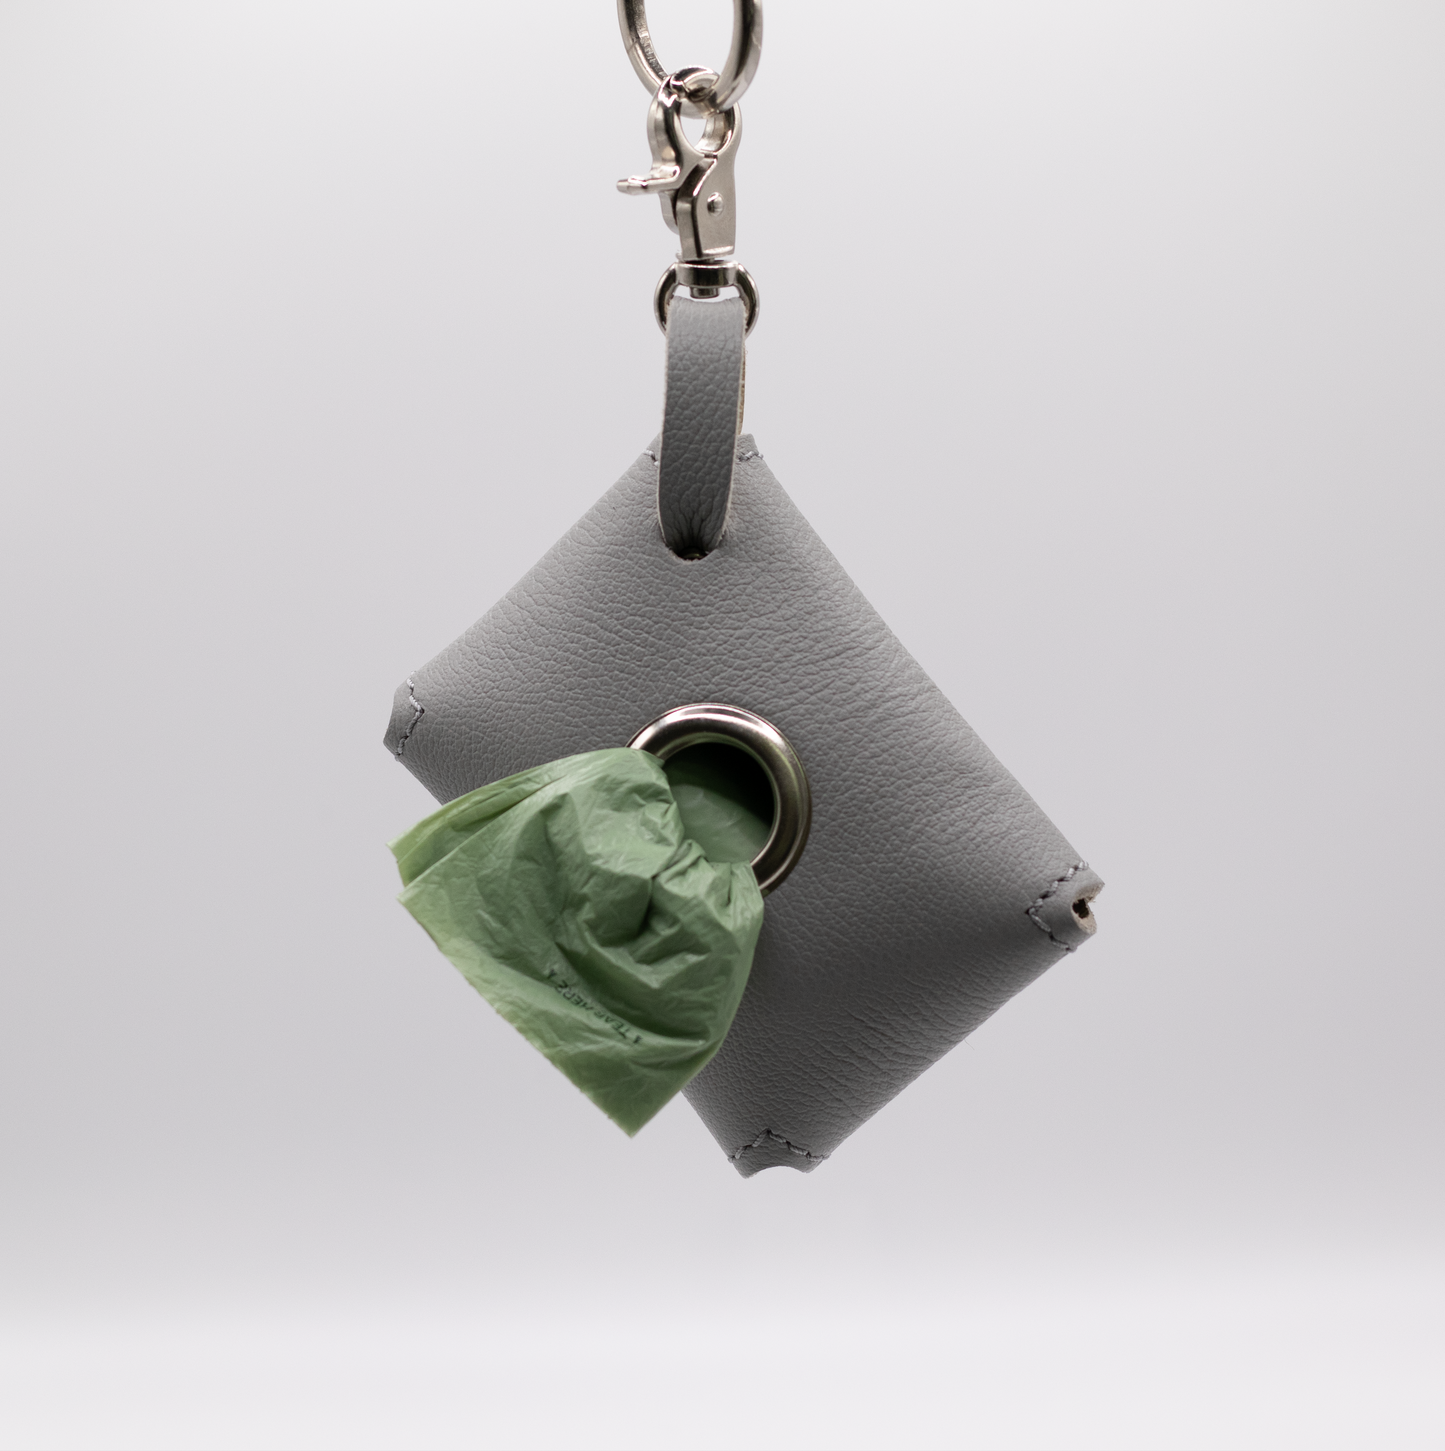 D&H PooSh - Soft Leather Poo Bag Dispenser Grey